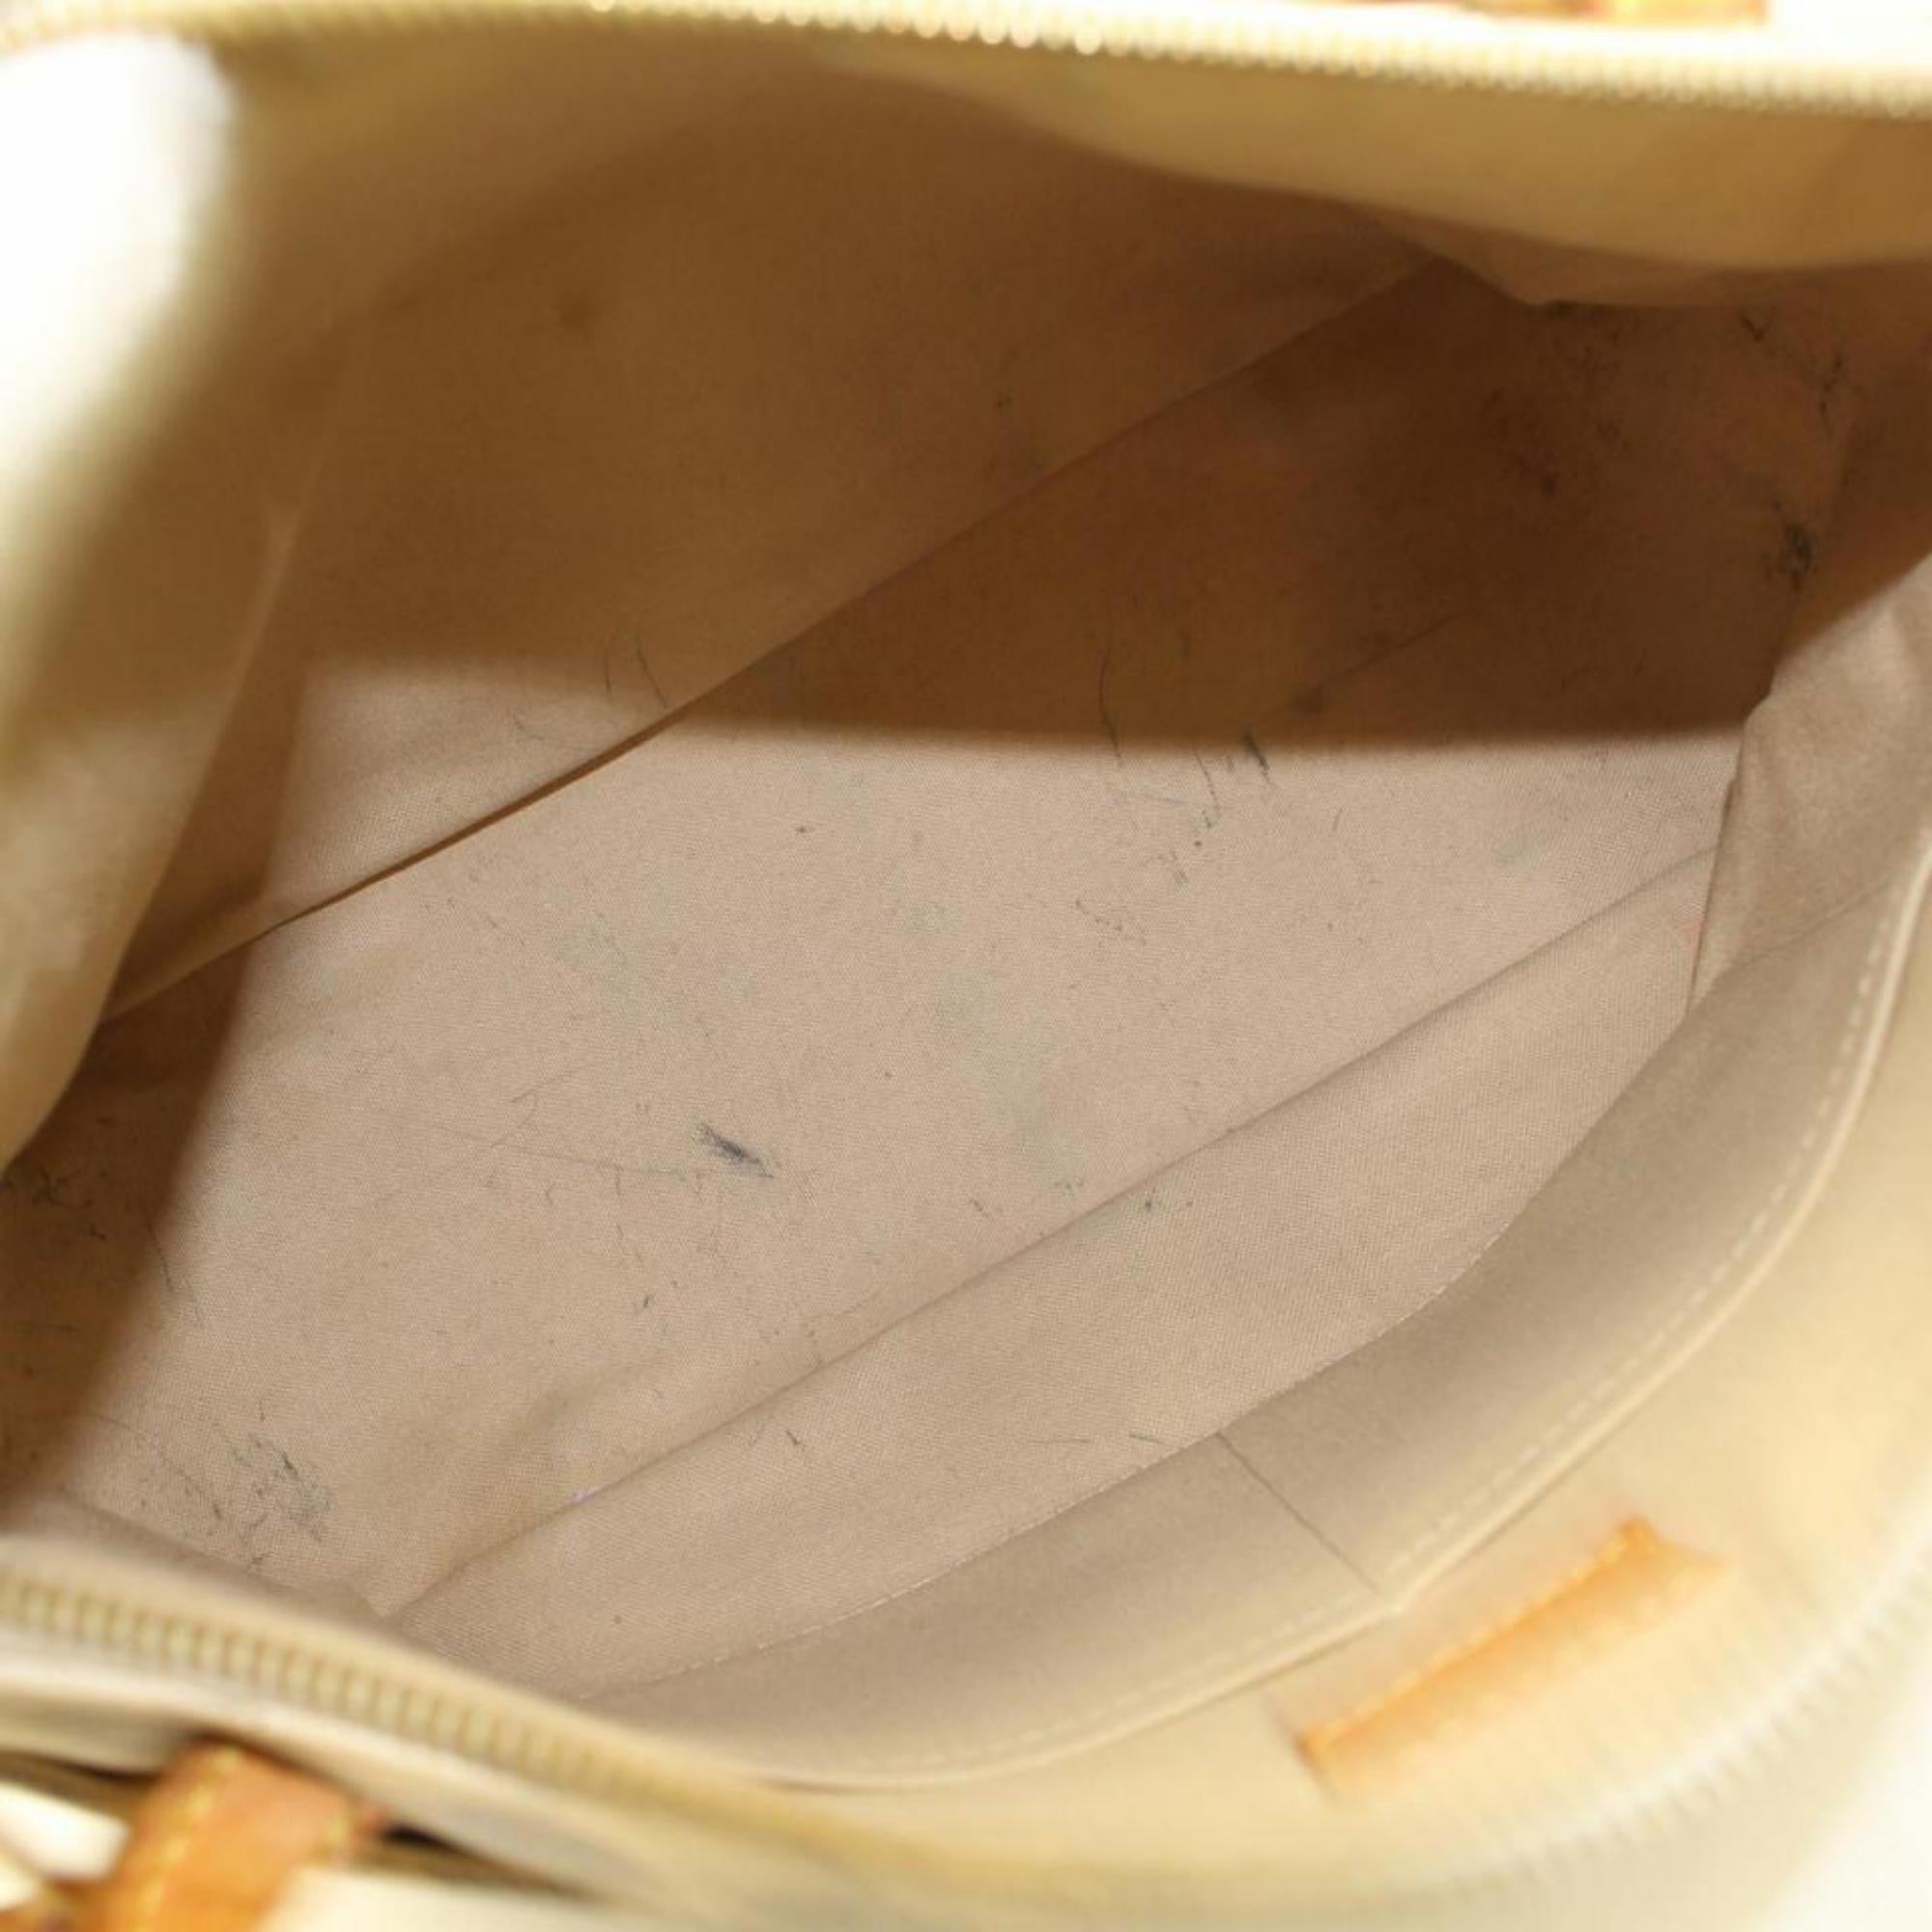 Louis Vuitton Figheri Damier Azur Pm 866456 White Coated Canvas Shoulder Bag For Sale 1